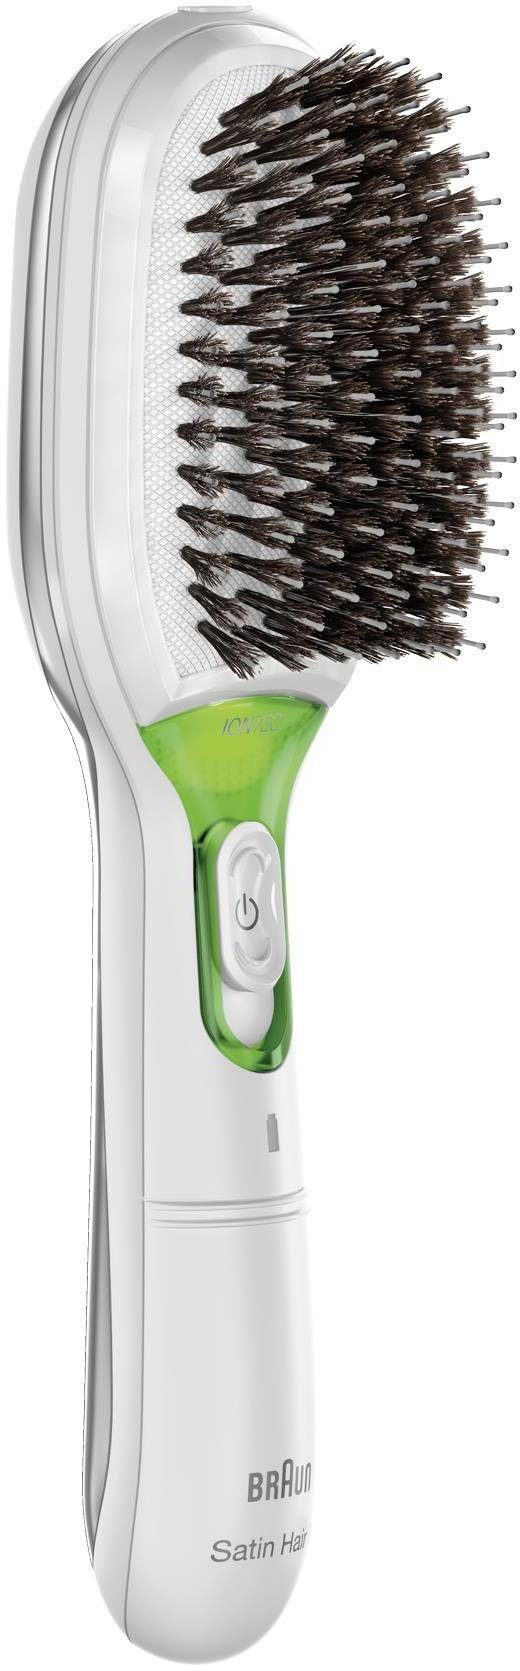 Braun Haarglättbürste Satin Hair 7 IONTEC BR750, natürliche Borsten, Ionen-Technologie zur Glanz-Förderung